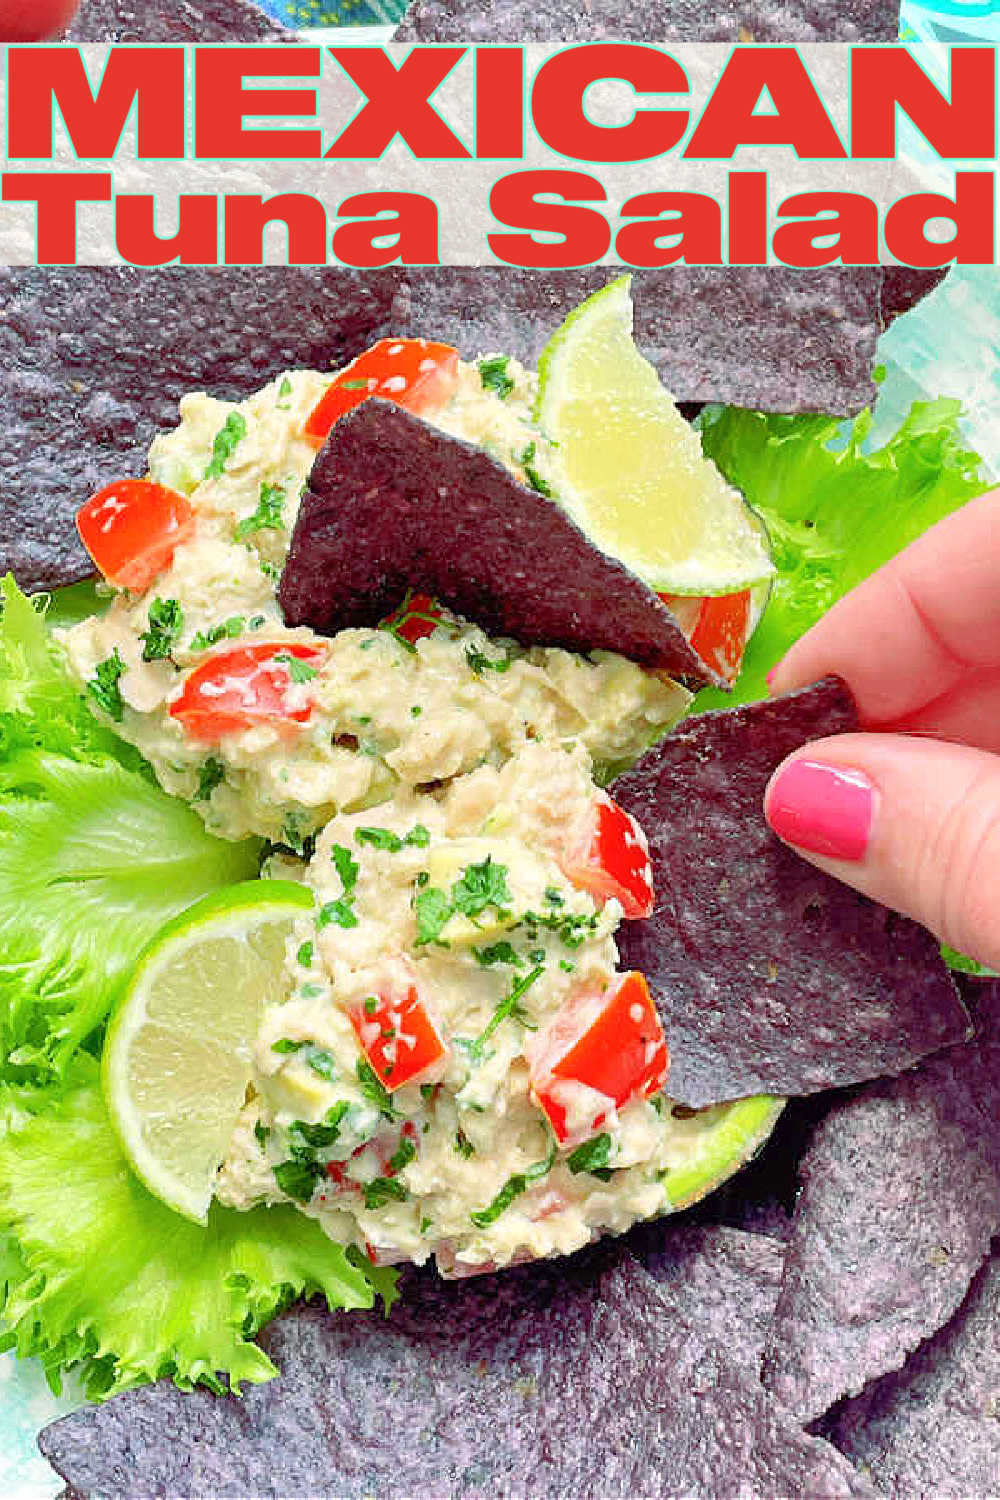 Mexican Tuna Salad | Foodtastic Mom #mexicantunasalad #tunarecipes #tunasalad #mexicanrecipes via @foodtasticmom